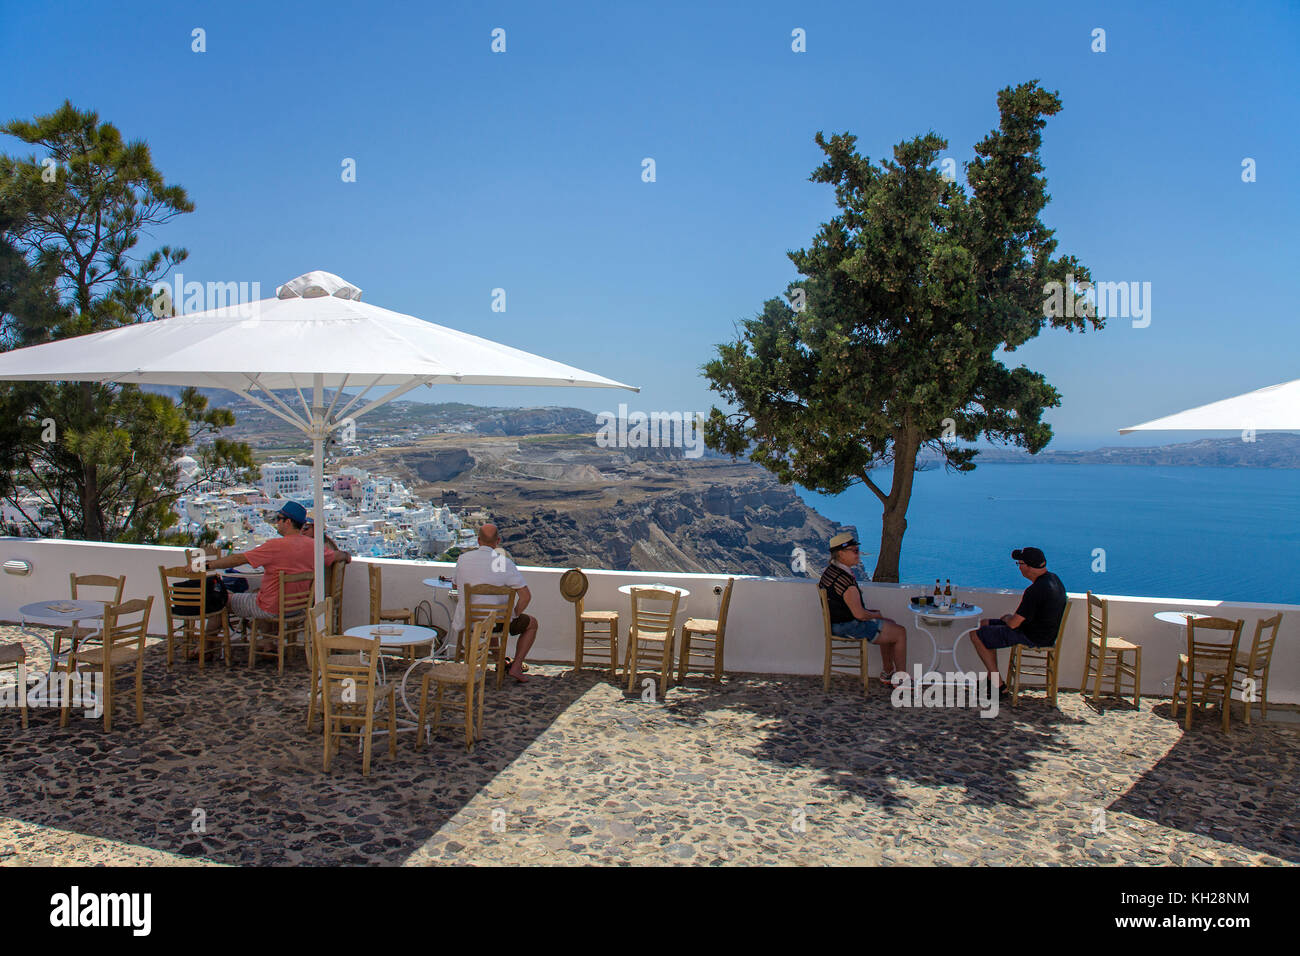 Terrazza di una taverna presso il bordo del cratere percorso con vista sulla città di Thira e Caldera, SANTORINI, CICLADI Grecia, Mare Mediterraneo, Europa Foto Stock